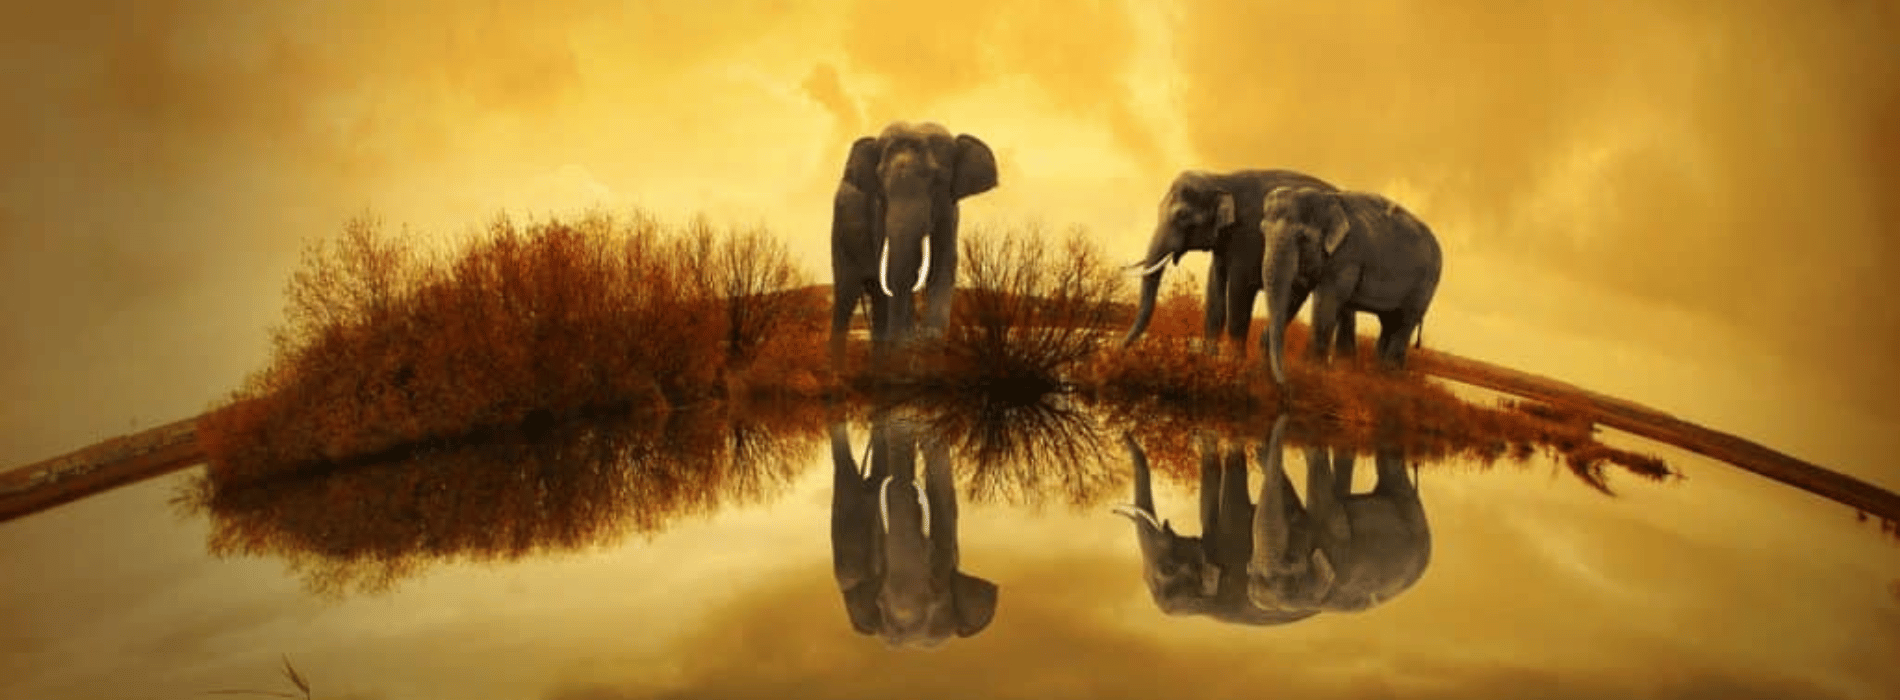 Significado espiritual del elefante